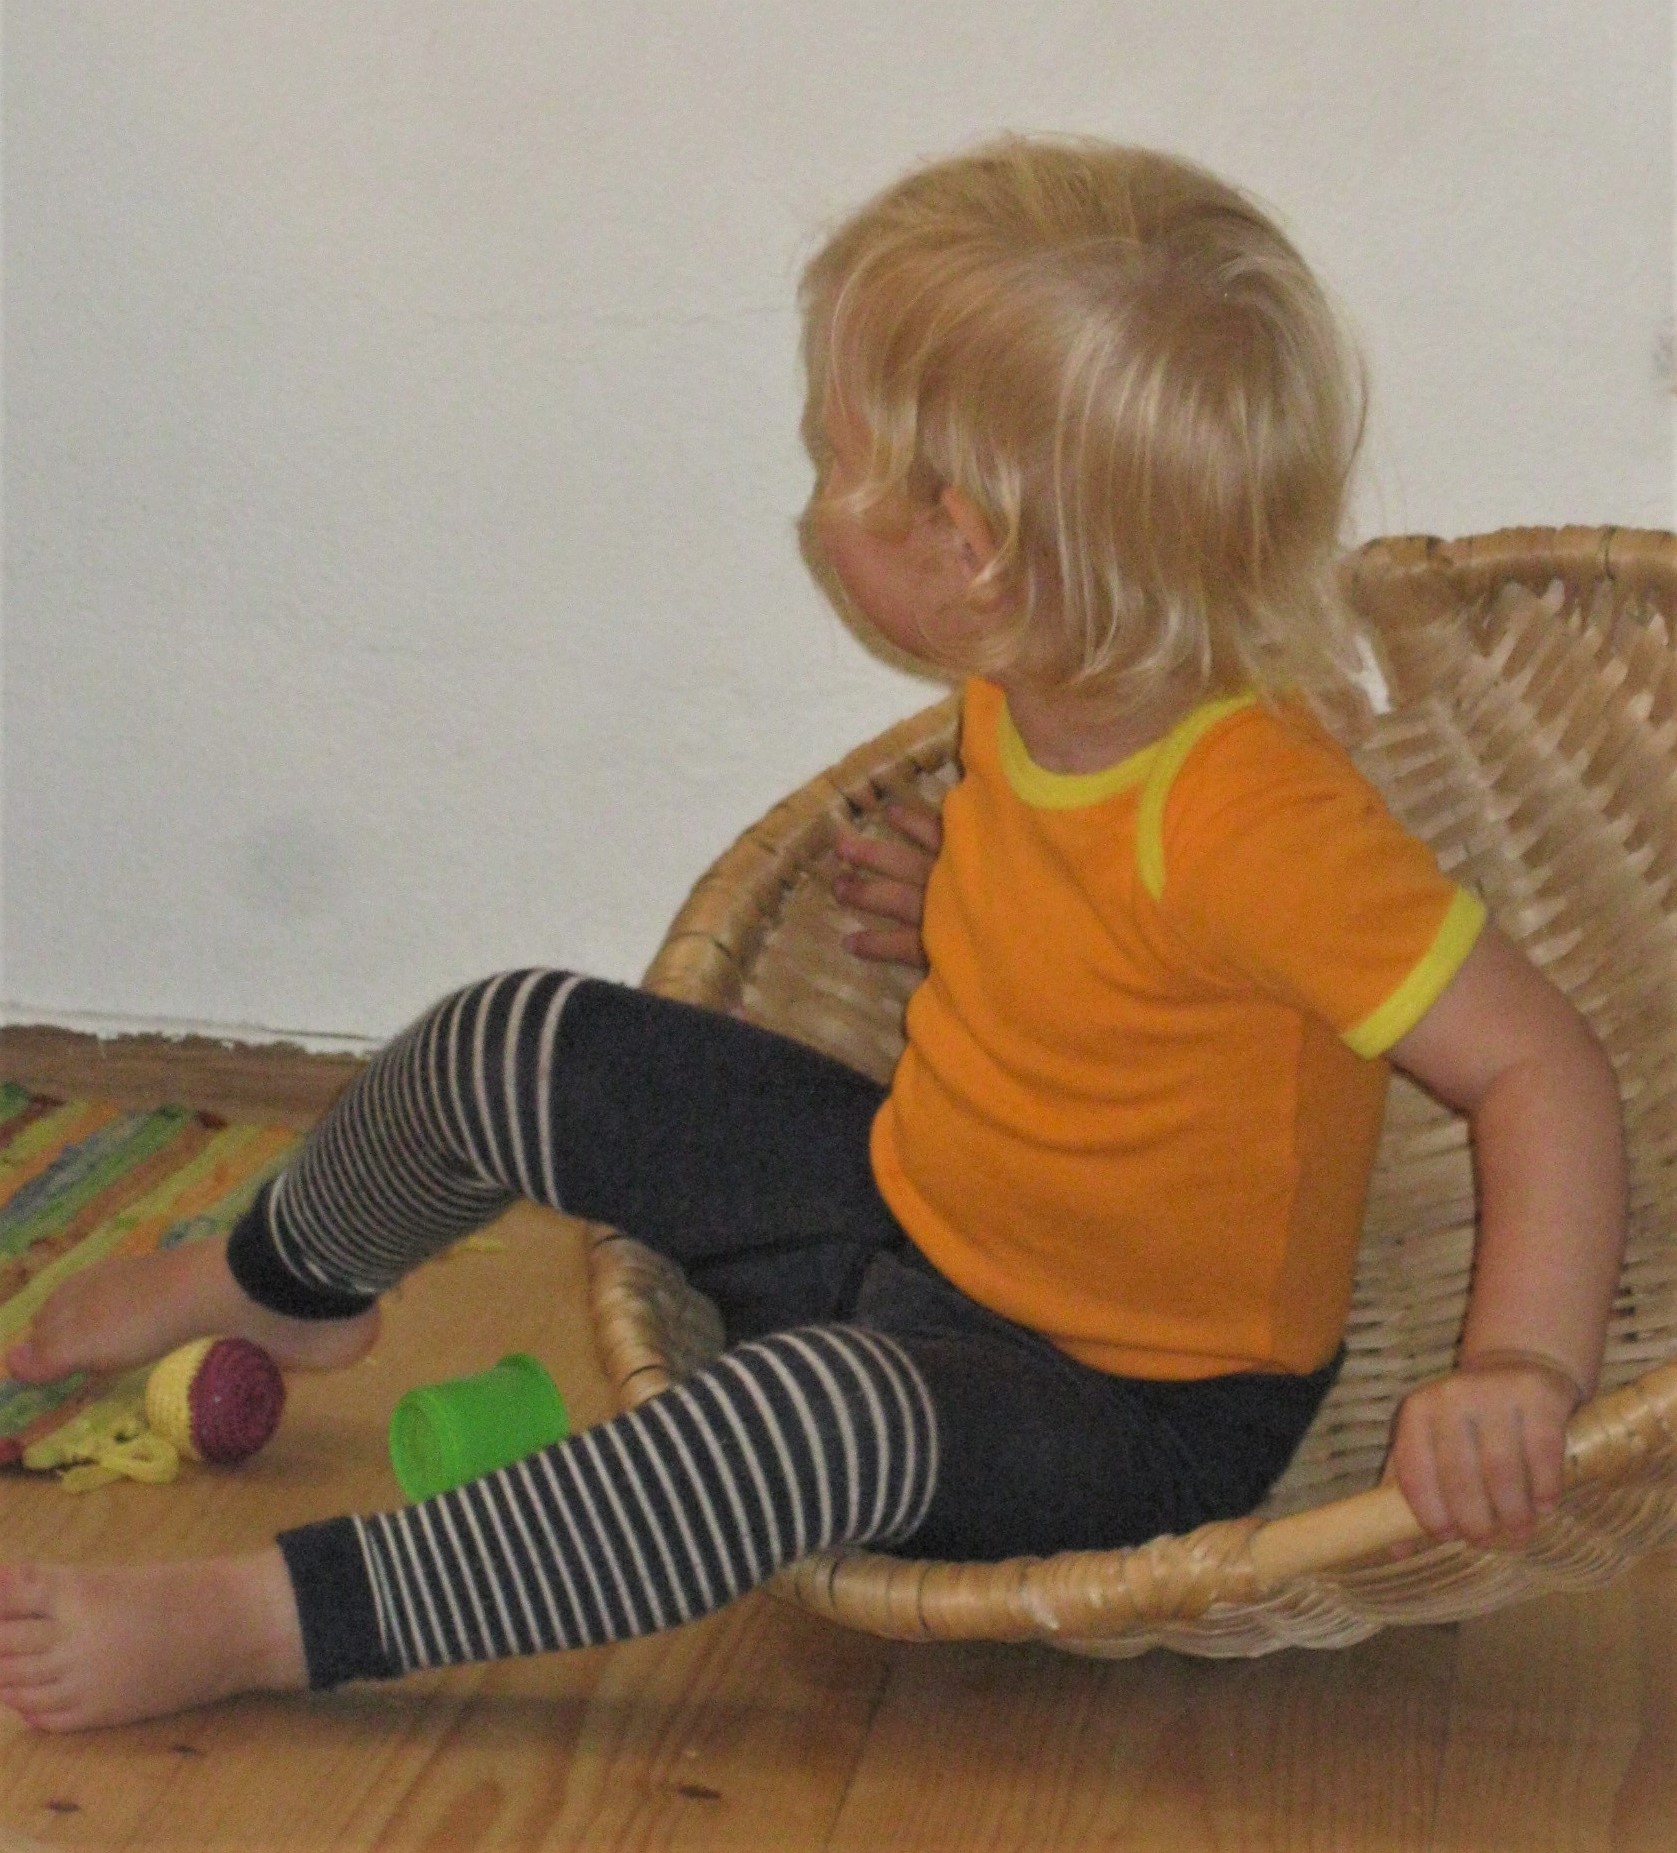 Kleinkind sitzt in einem runden Korb und schaukelt